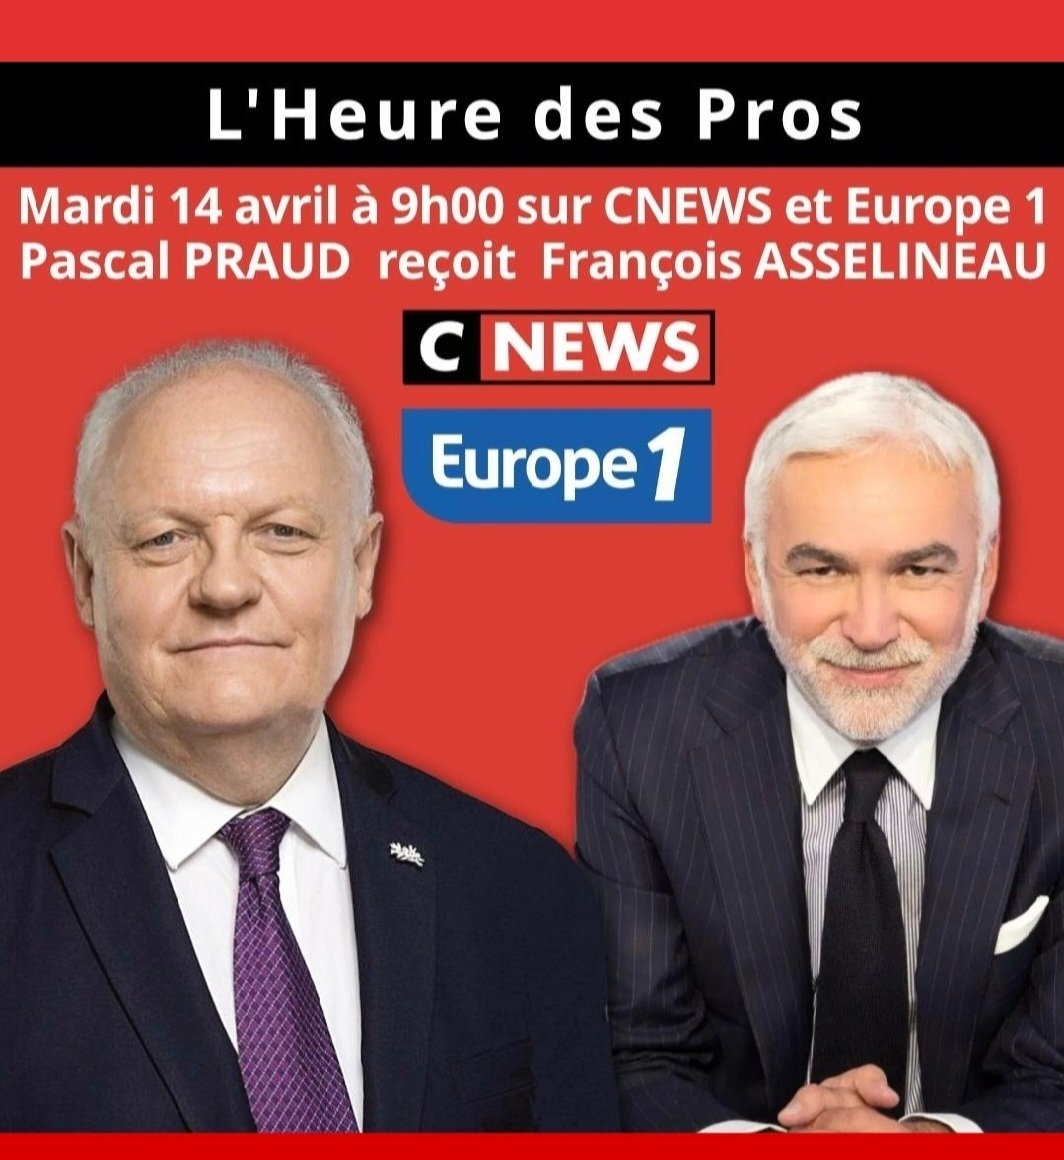 ⚠️🎙 Je suis l'invité de Pascal Praud ce mardi 14 avril, dans son émission 'L'heure des Pros', de 9h00 à 9h30 sur CNEWS et EUROPE 1.